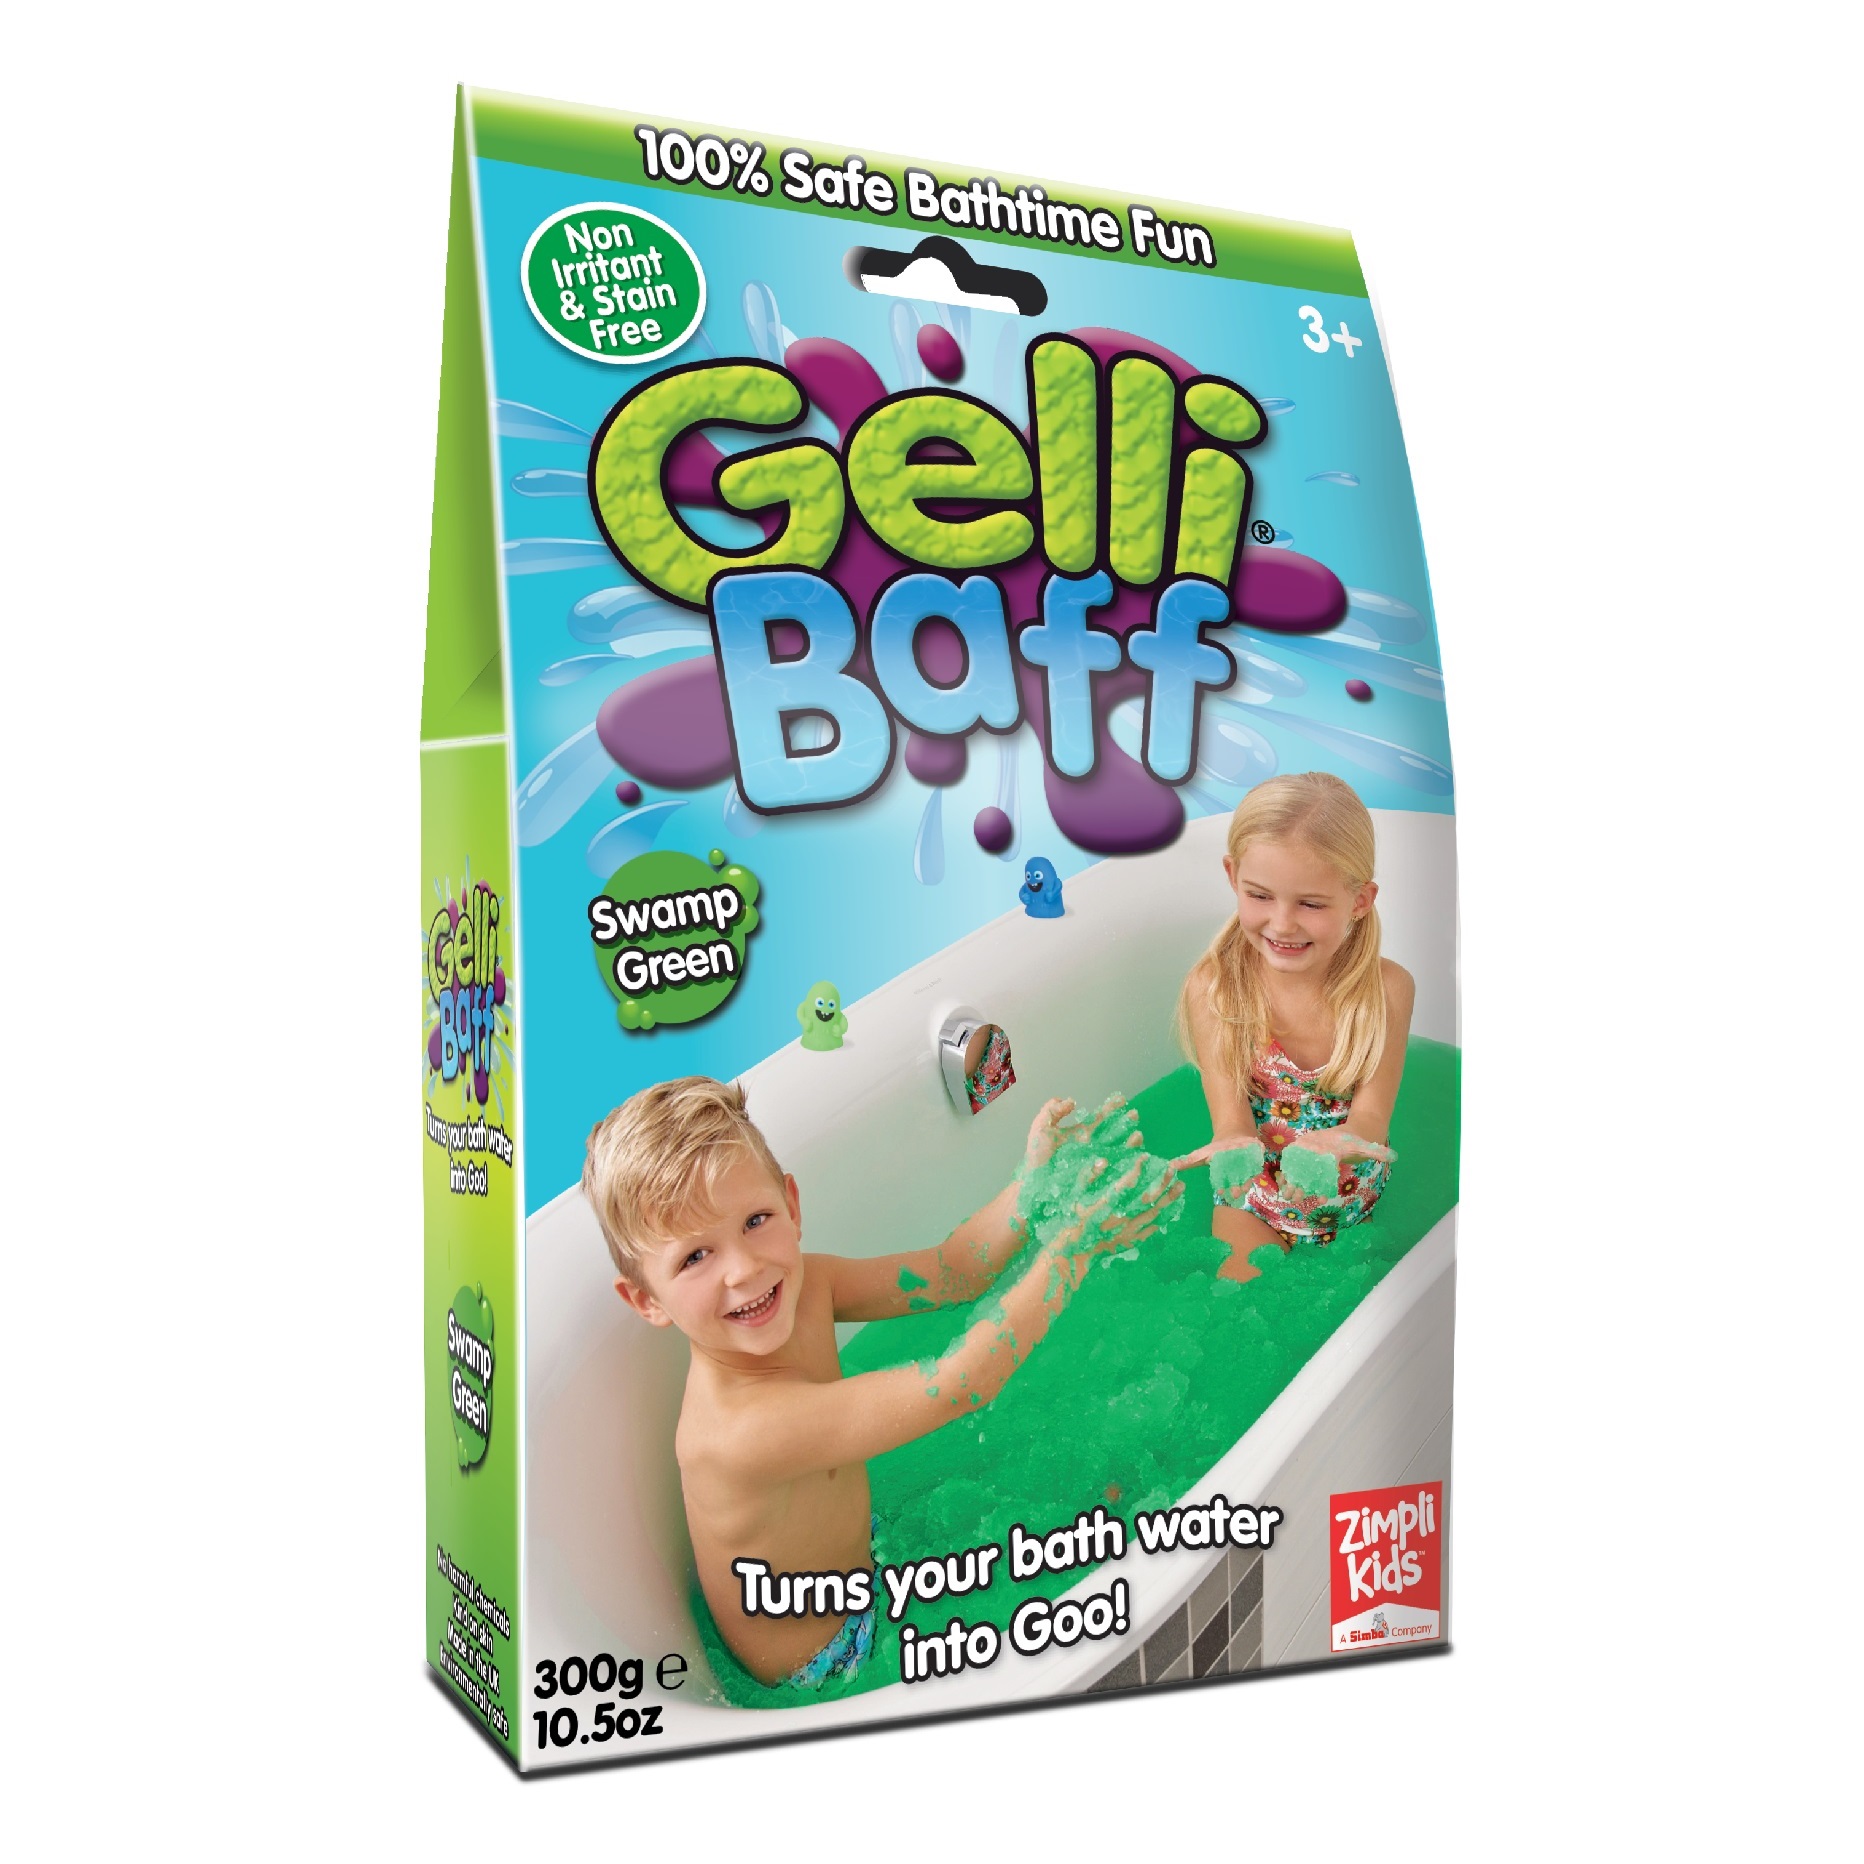 Magiczny proszek do kąpieli Gelli Baff Zimpli Kids - Zielony